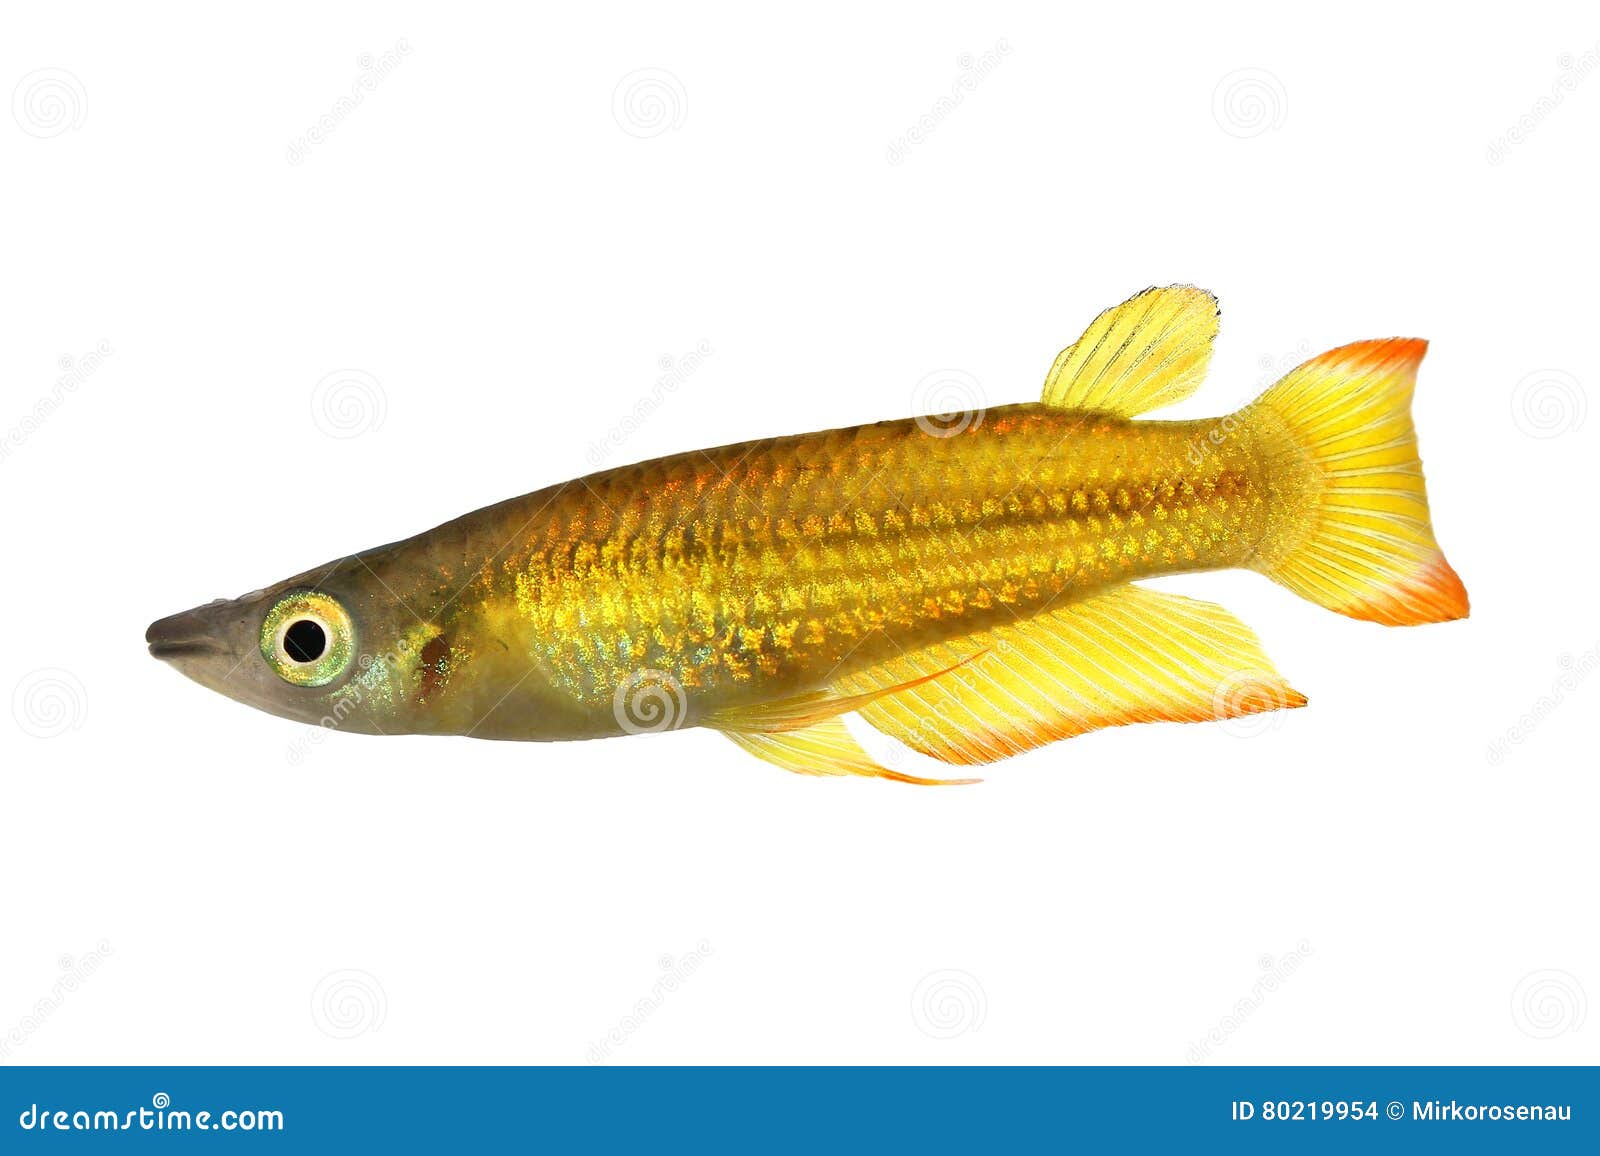 killifish striped panchax aplocheilus lineatus tropical aquarium fish